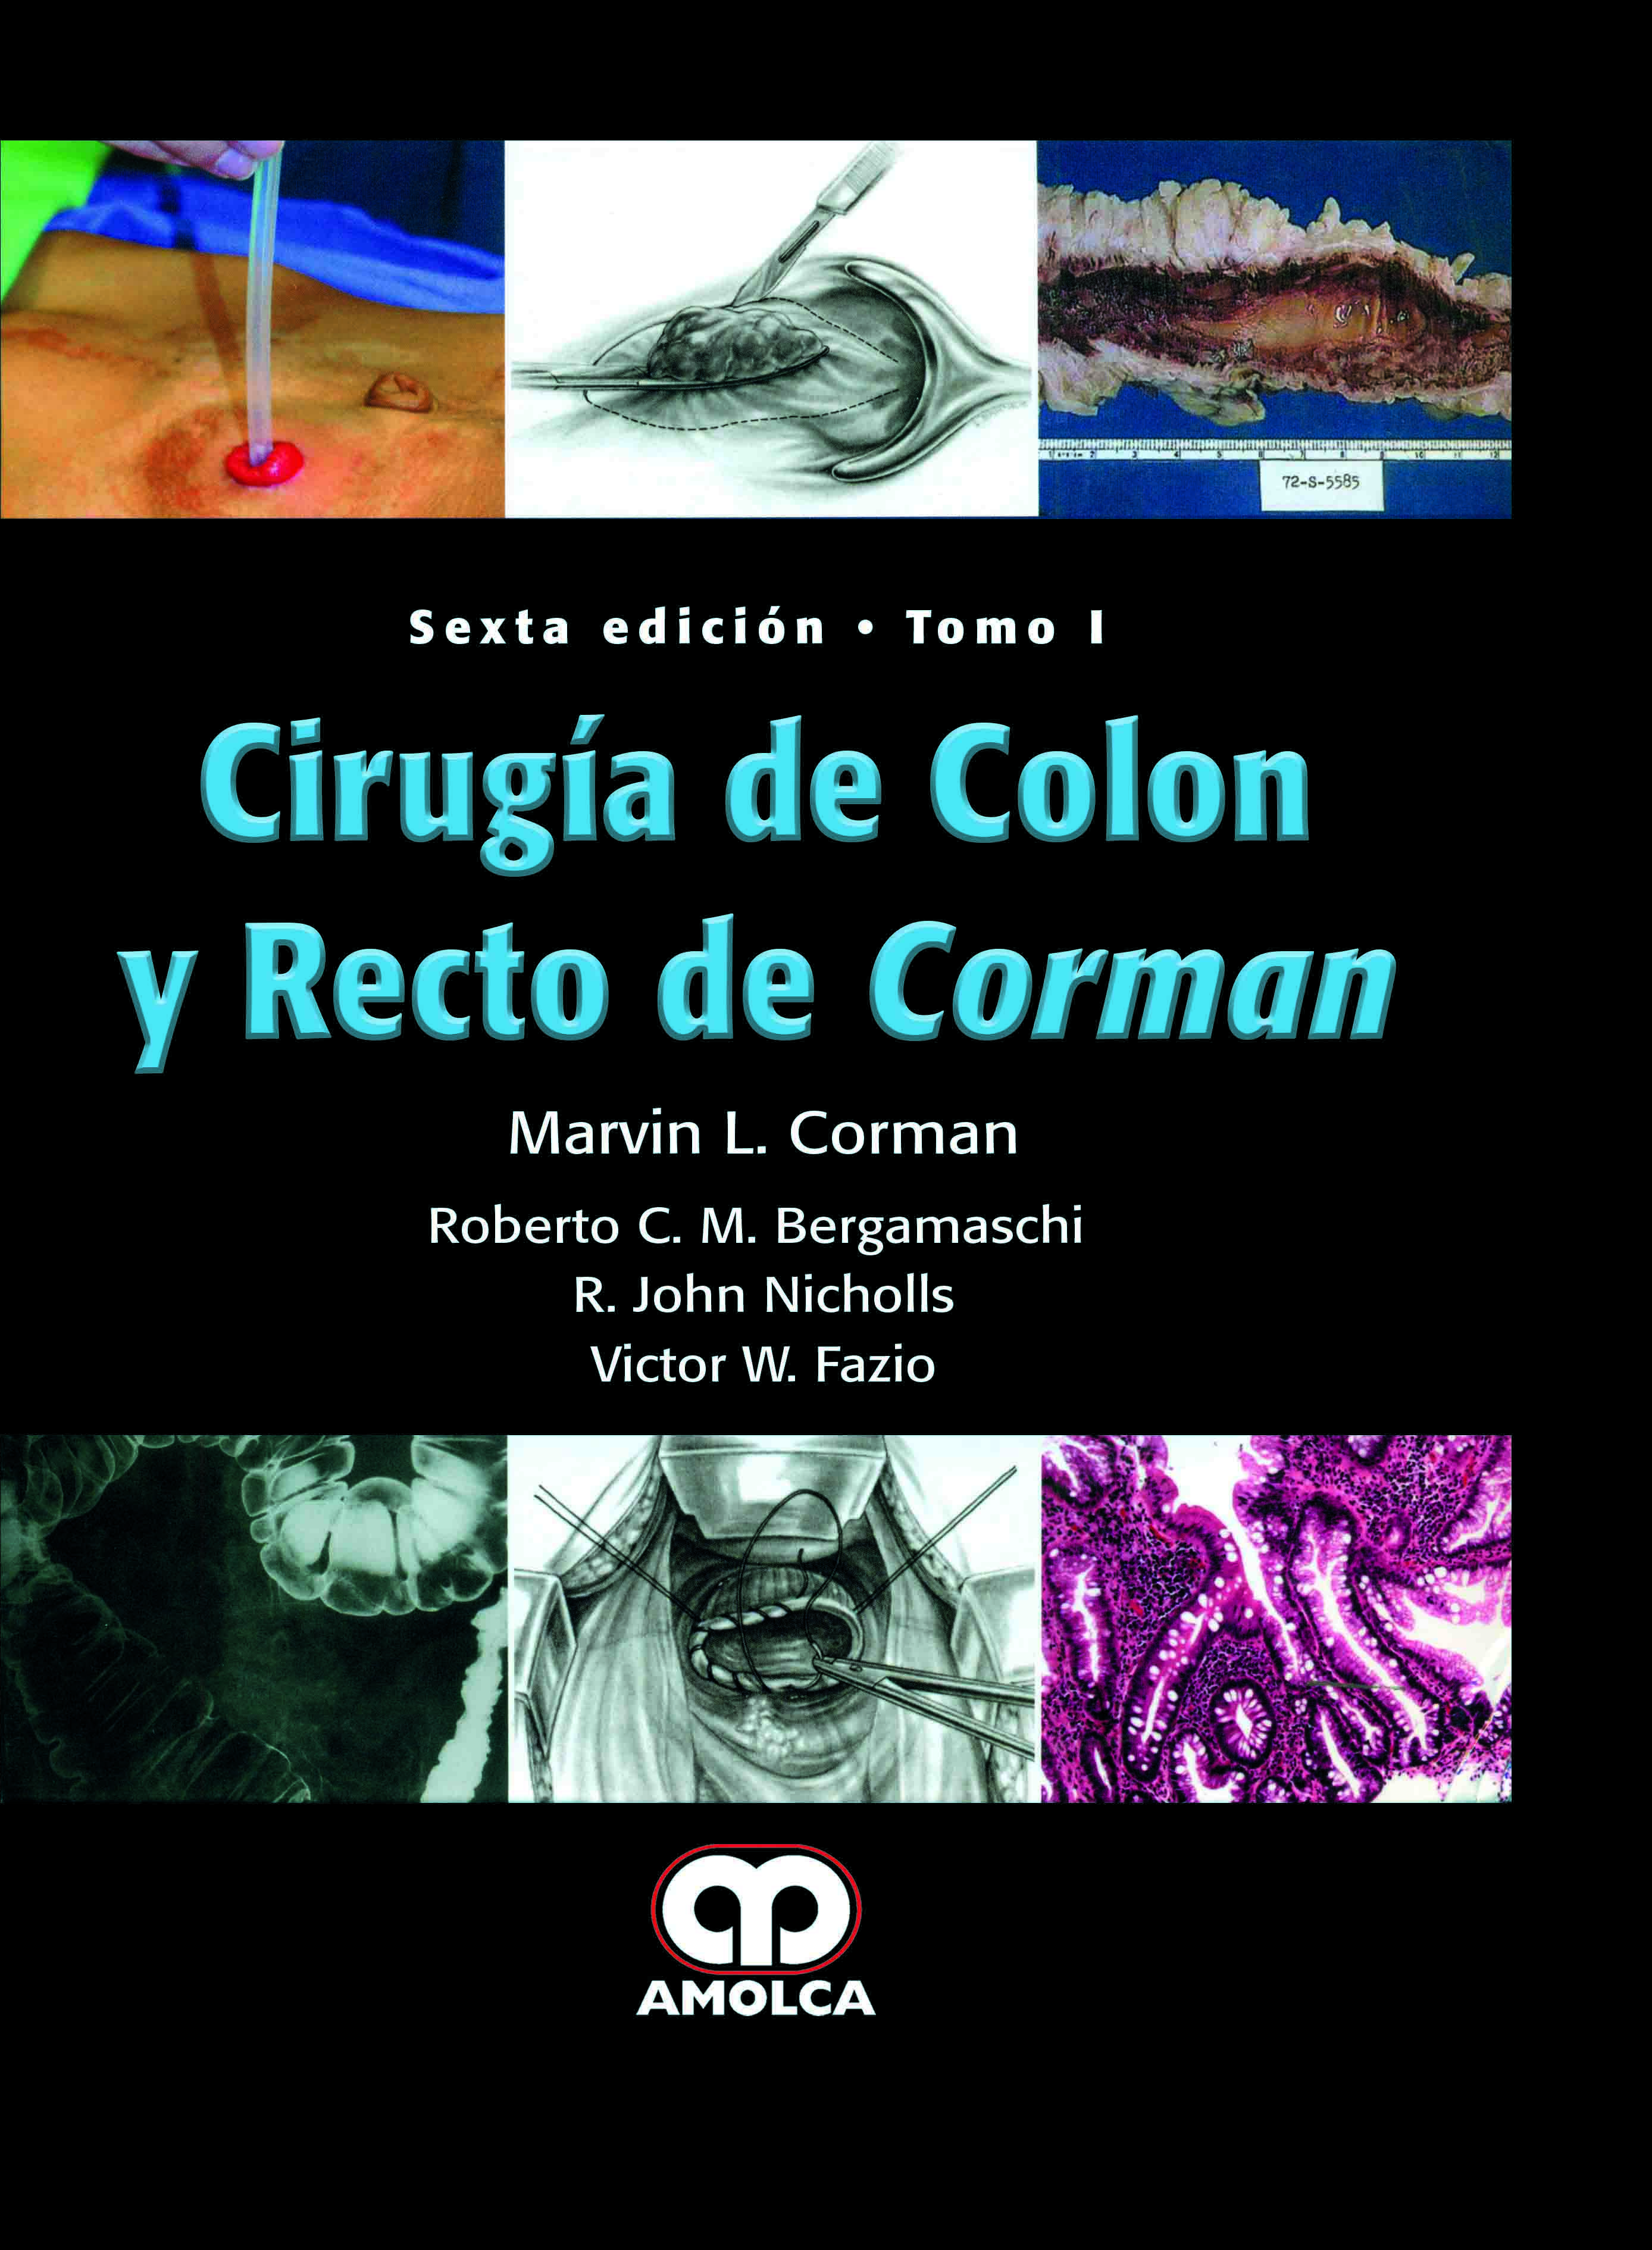 CIRUGÍA DE COLON Y RECTO DE CORMAN